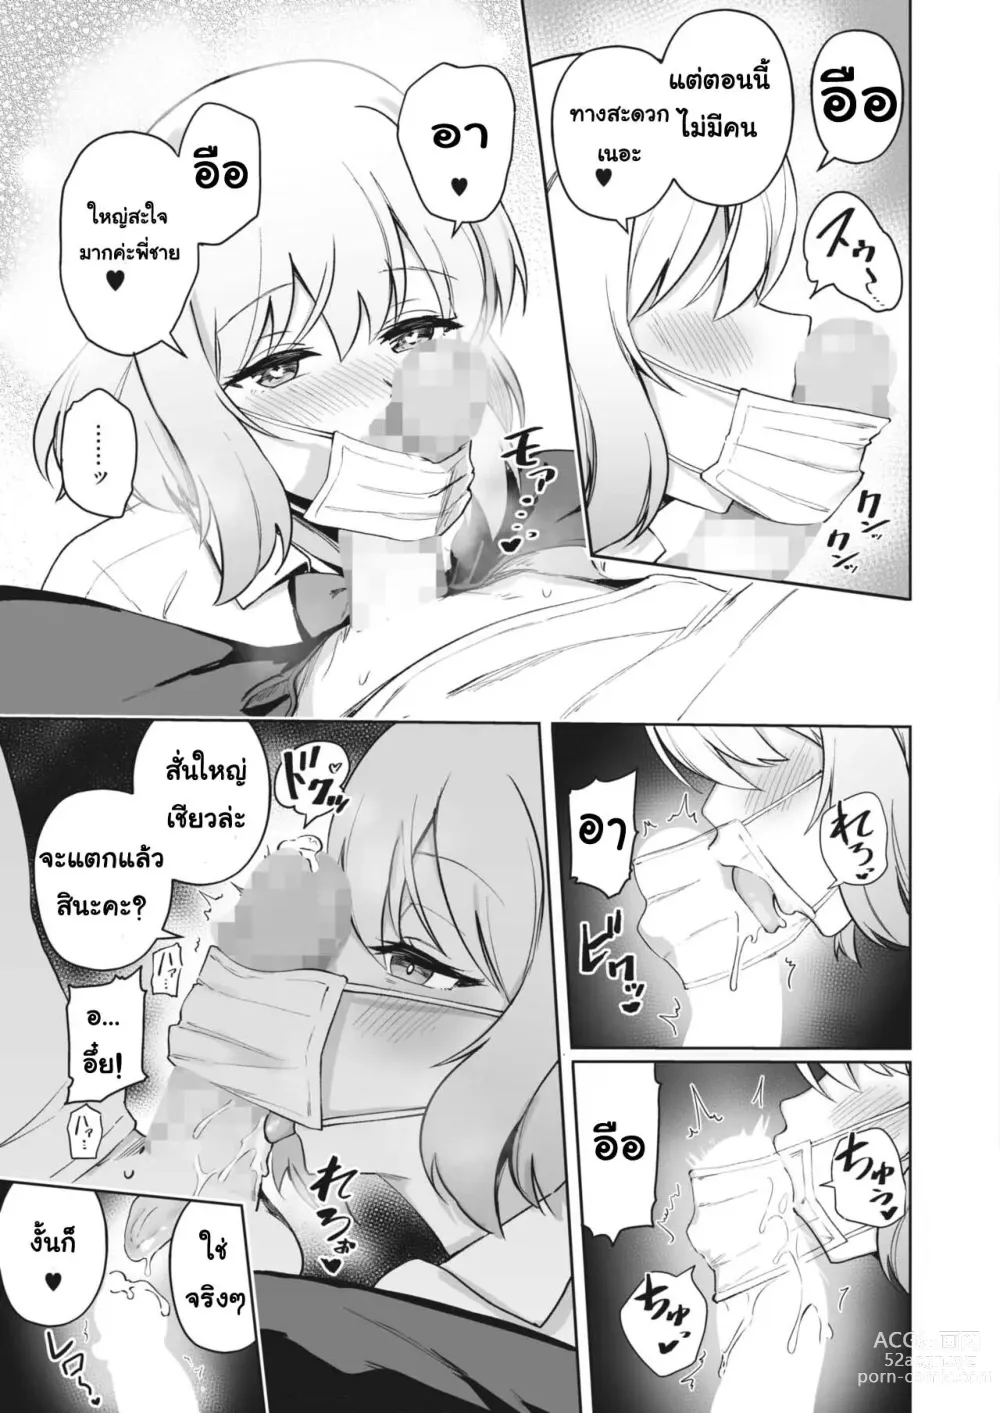 Page 7 of manga Aimin Continue!